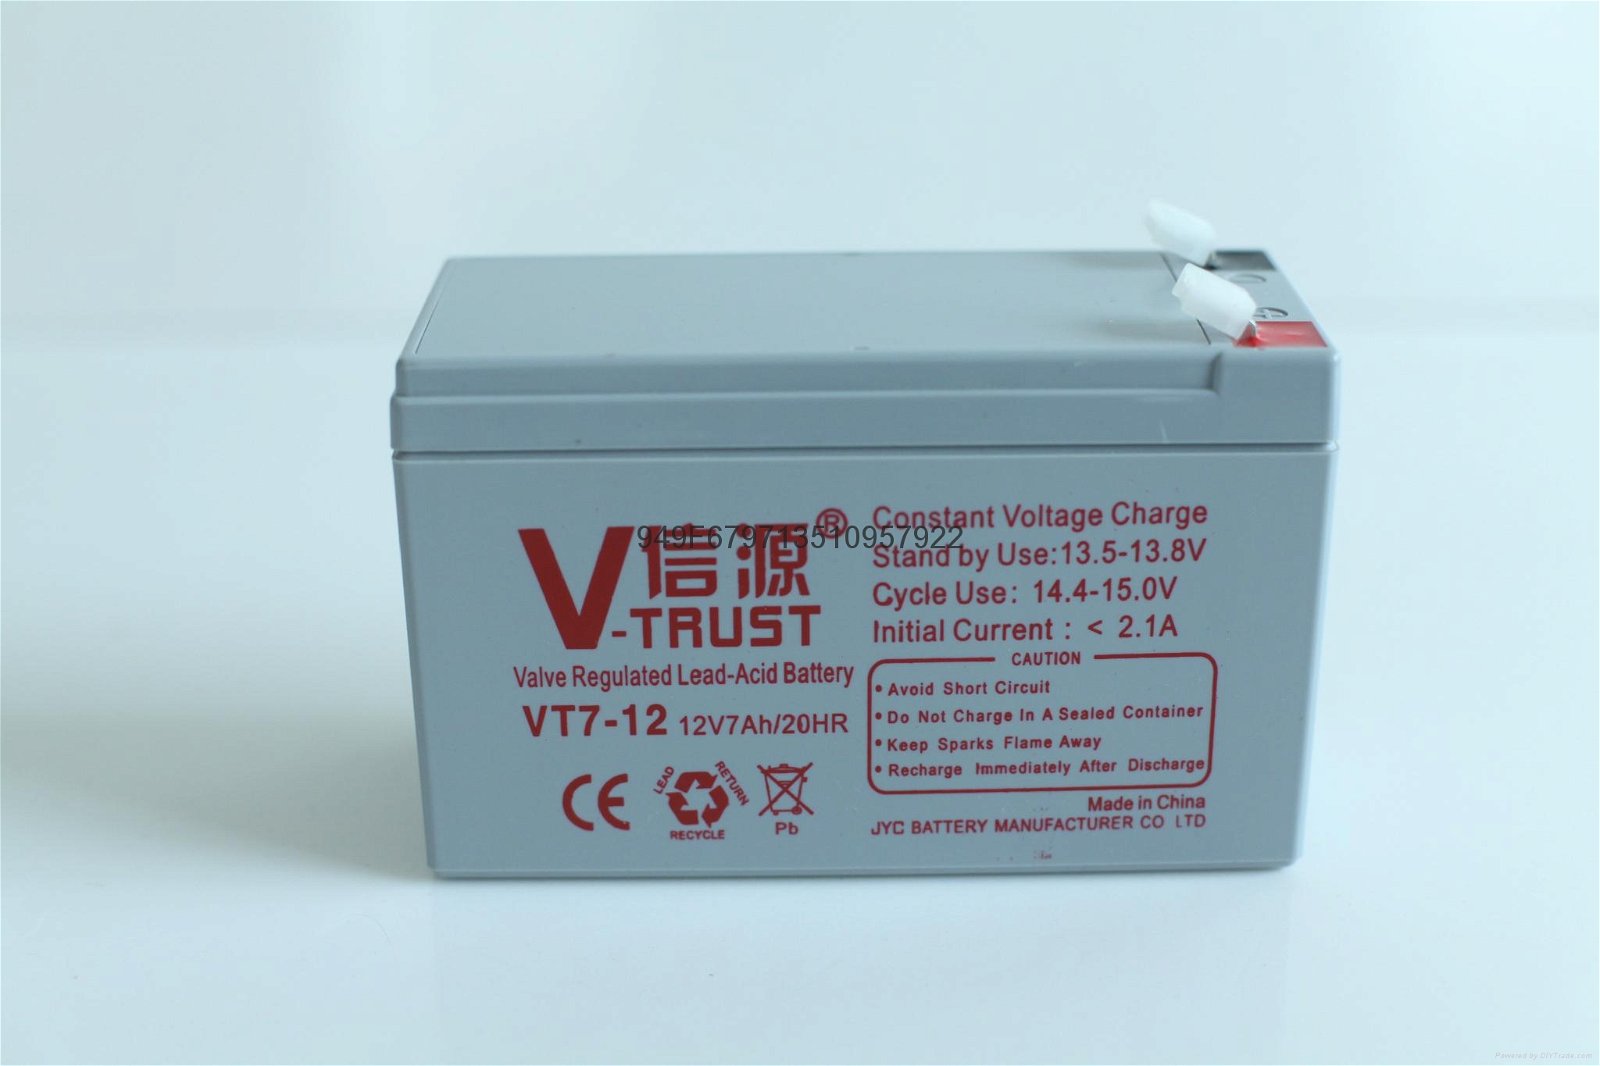  广东金悦诚蓄电池JYC电池12V7AH信源品牌德尼欧电池INNOTEK铅酸蓄电池